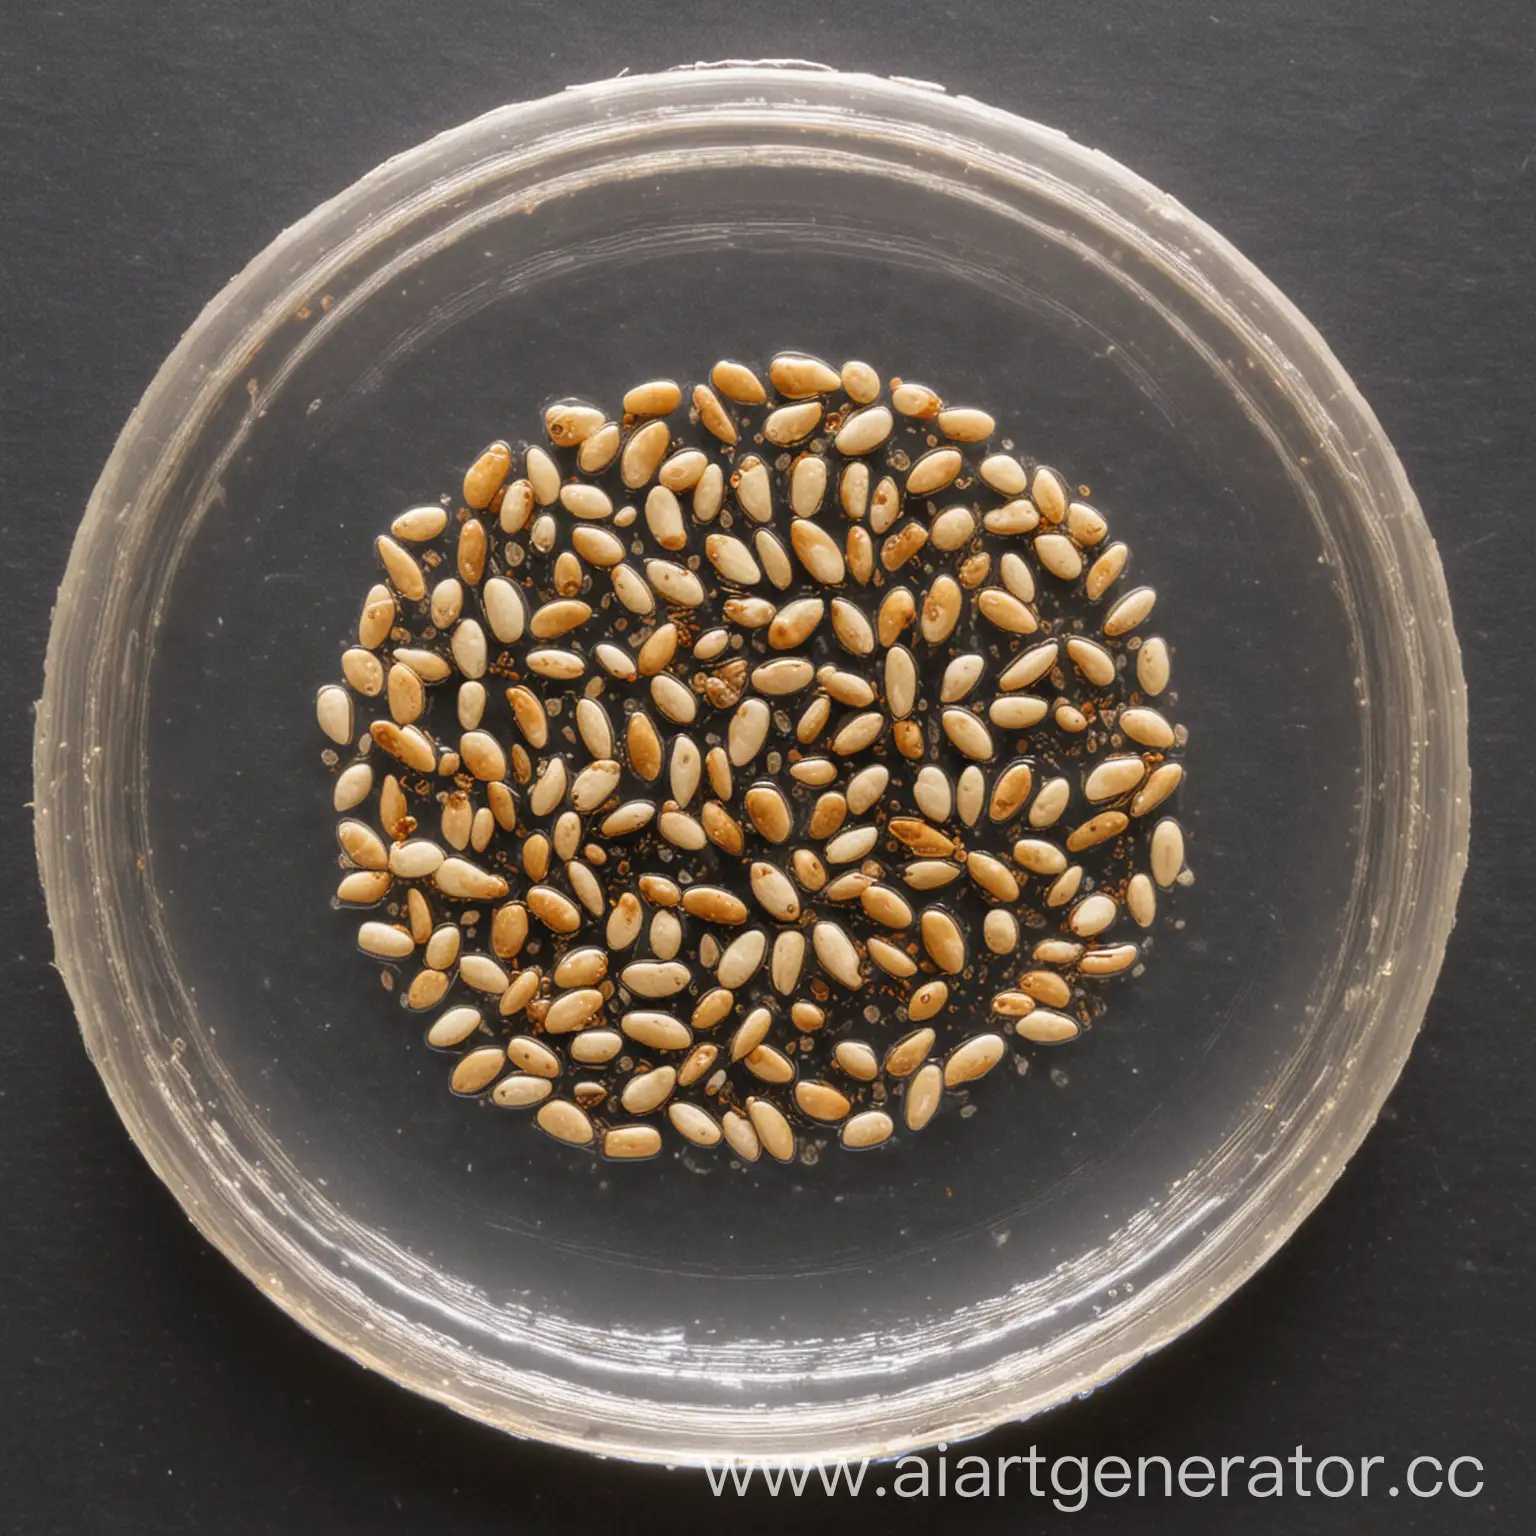 Ungerminated-Seeds-in-Petri-Dish-Scientific-Experimentation-Concept